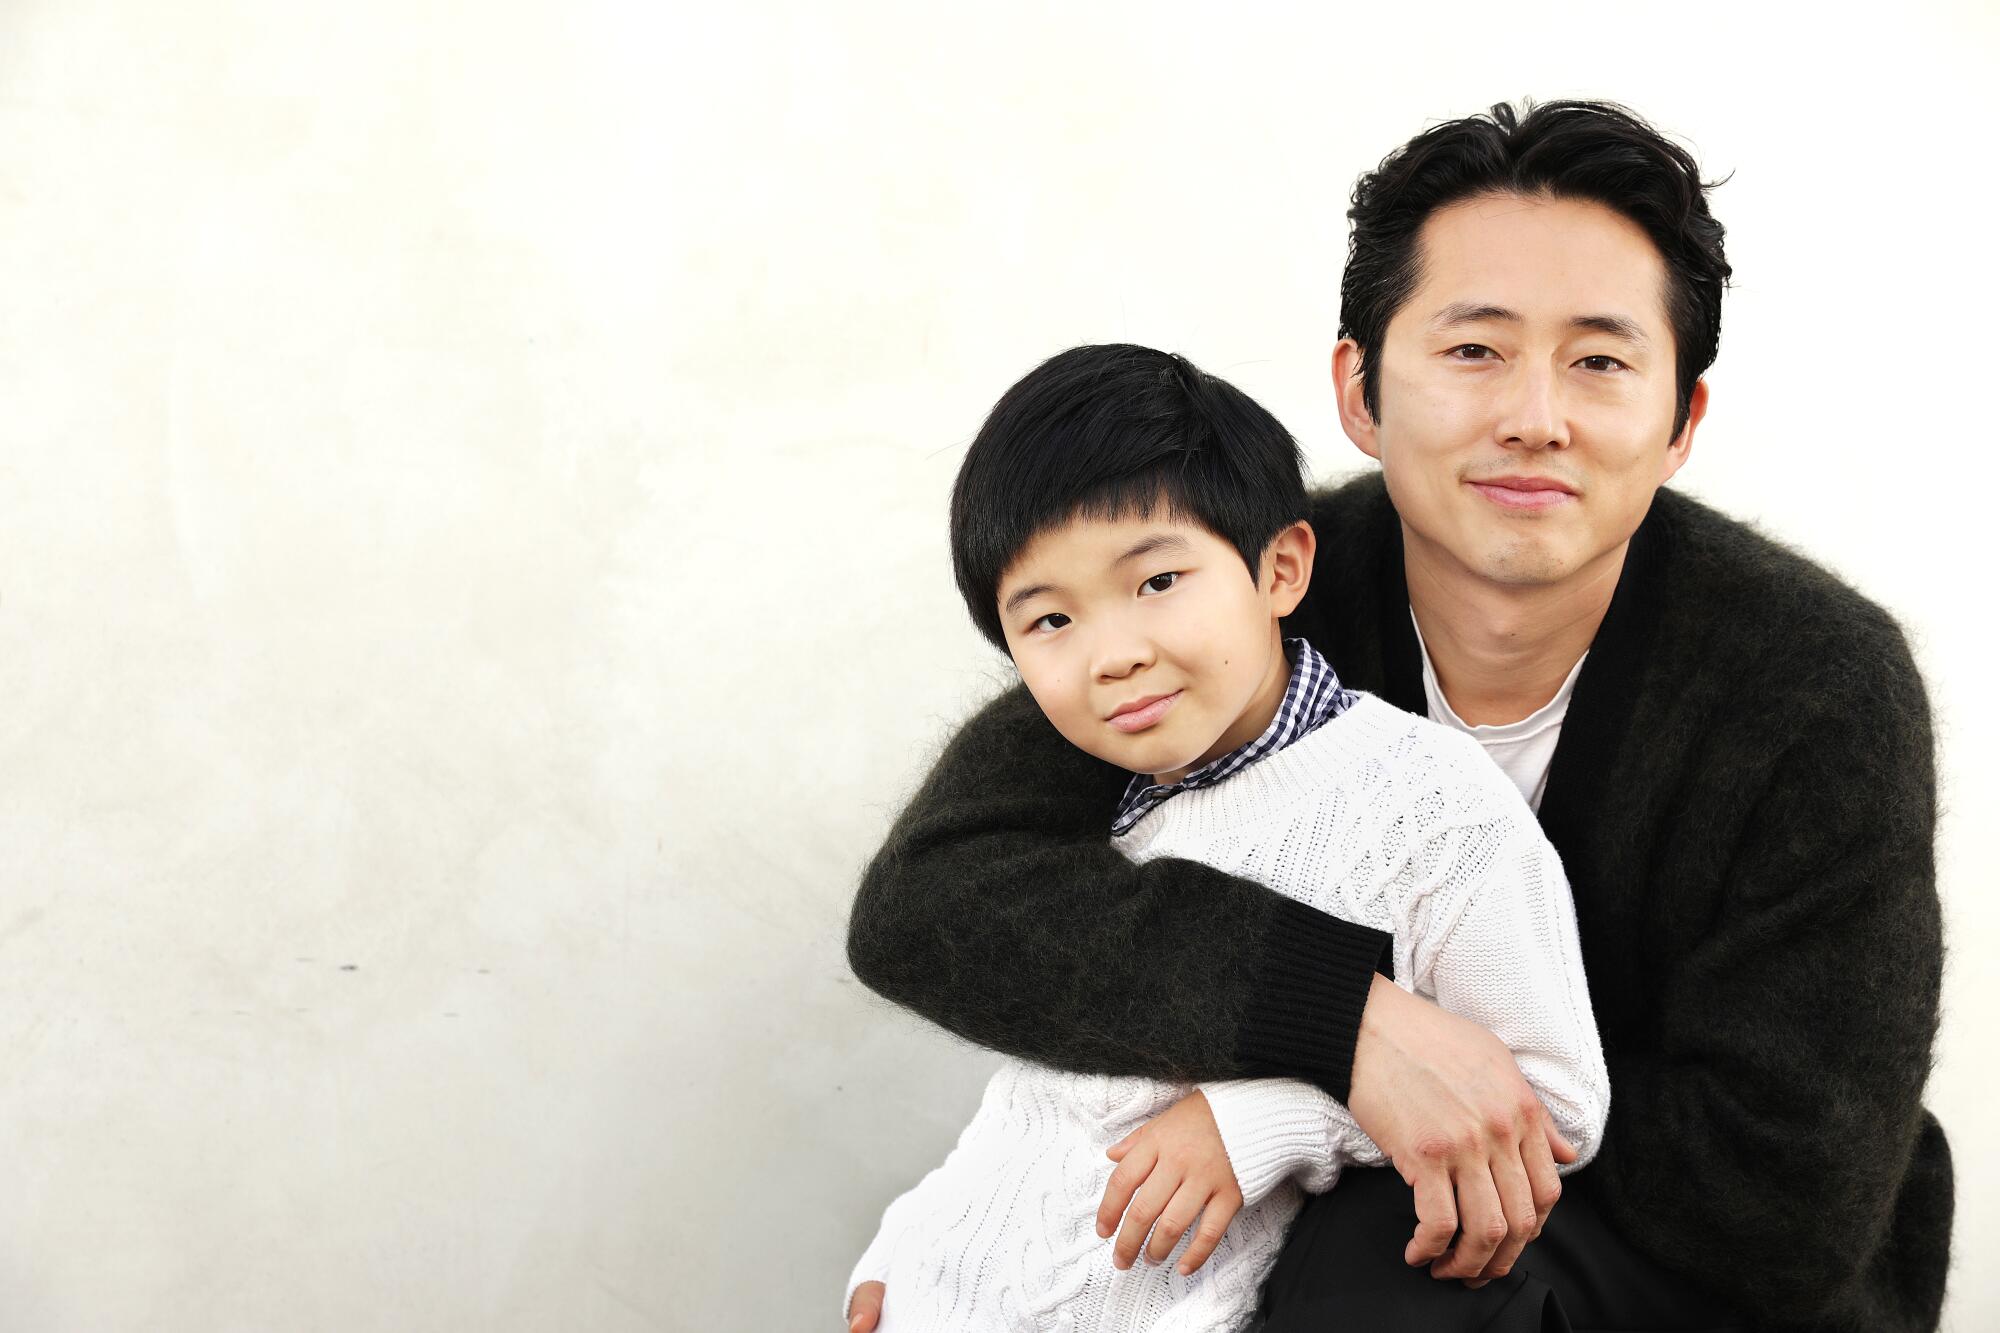 Actor Steven Yeun embraces Alan Kim, who plays his son in "Minari."